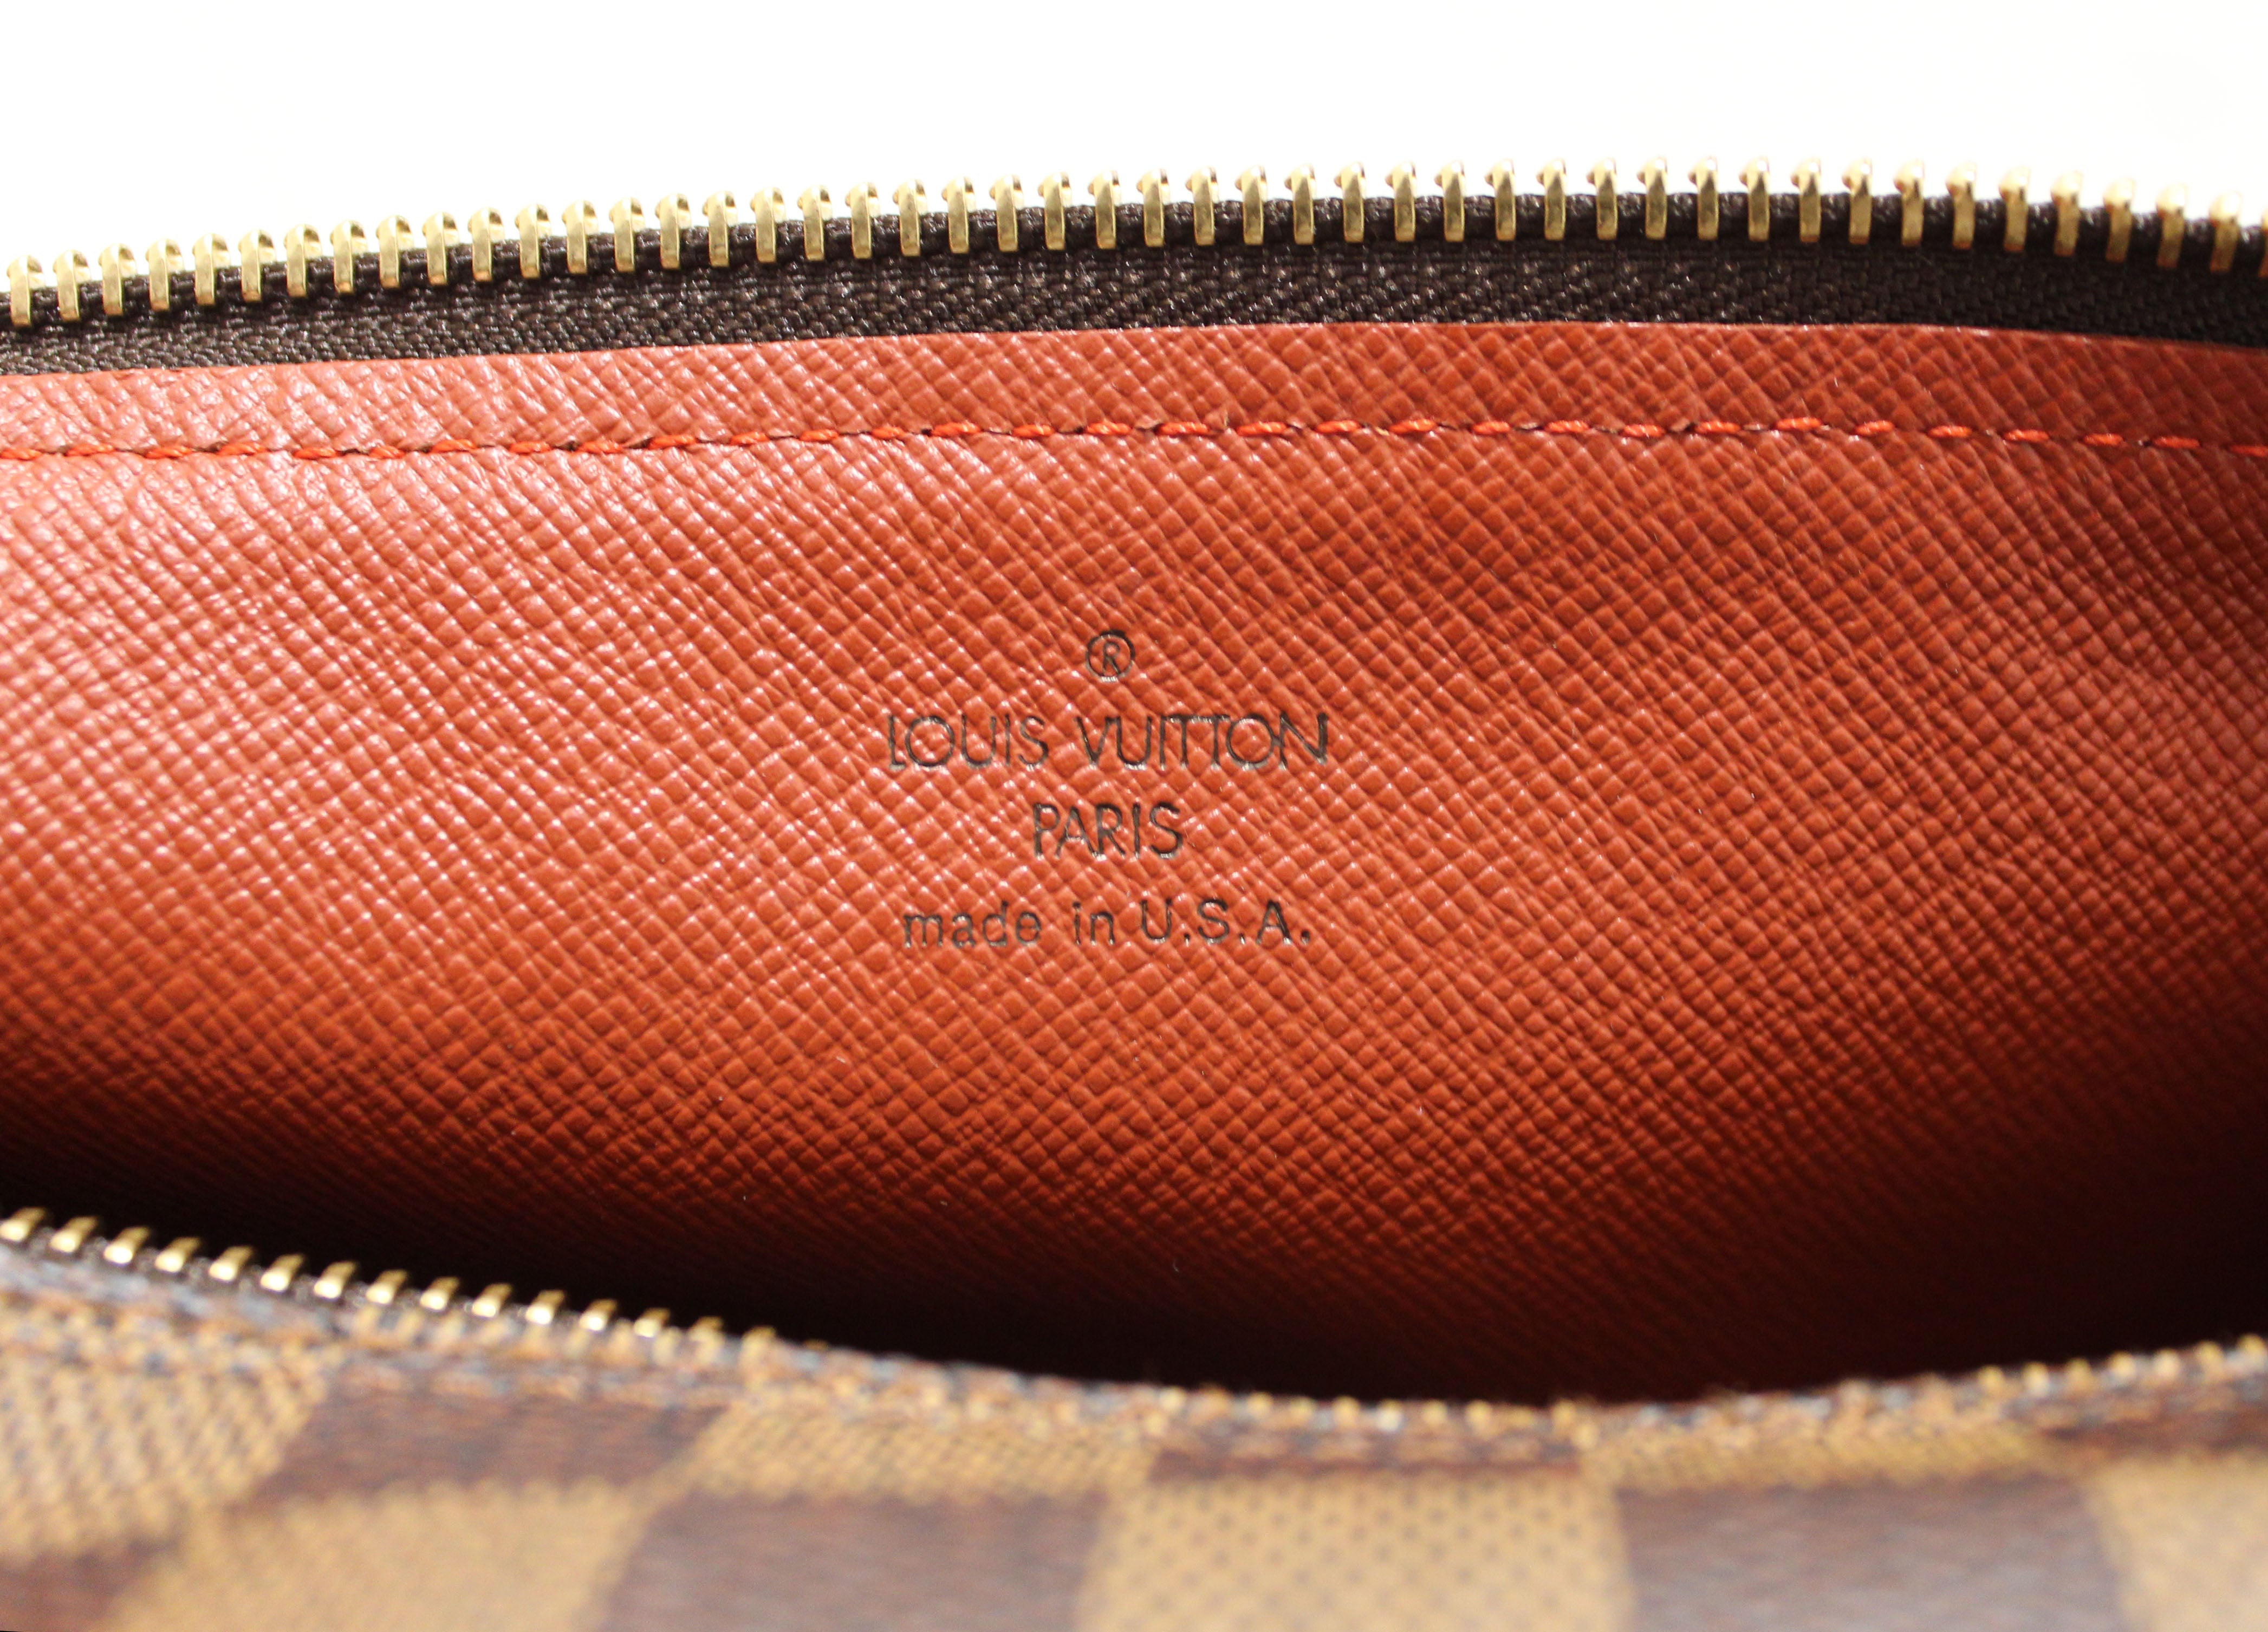 Authentic Louis Vuitton Damier Ebene Papillon 30 Handbag